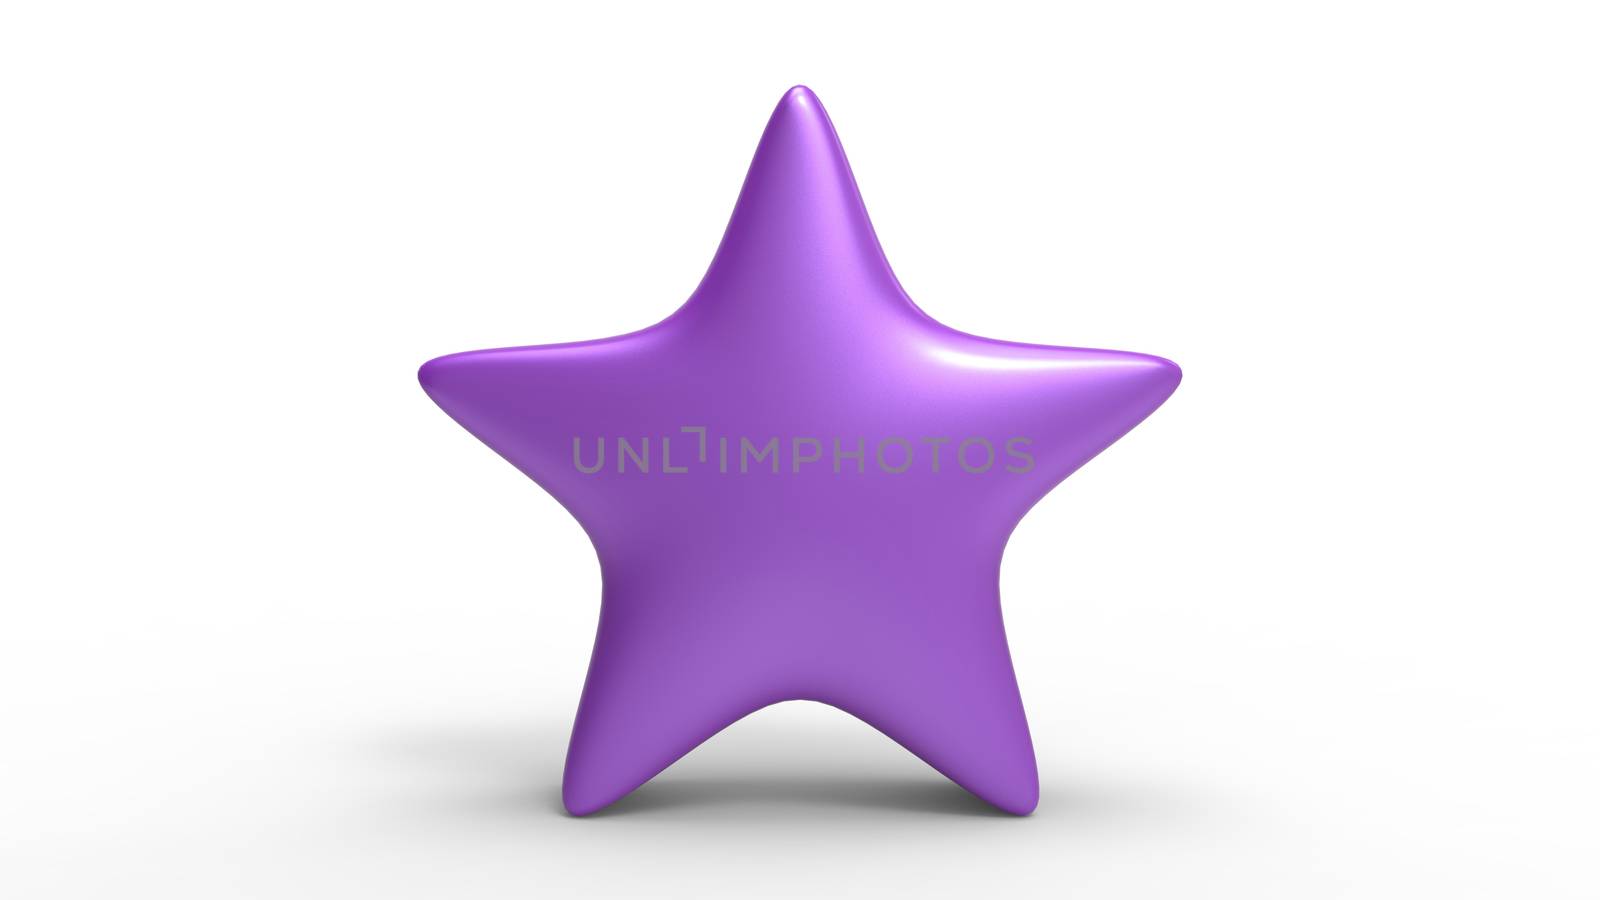 3d violet star on color background. Render and illustration of golden star for premium